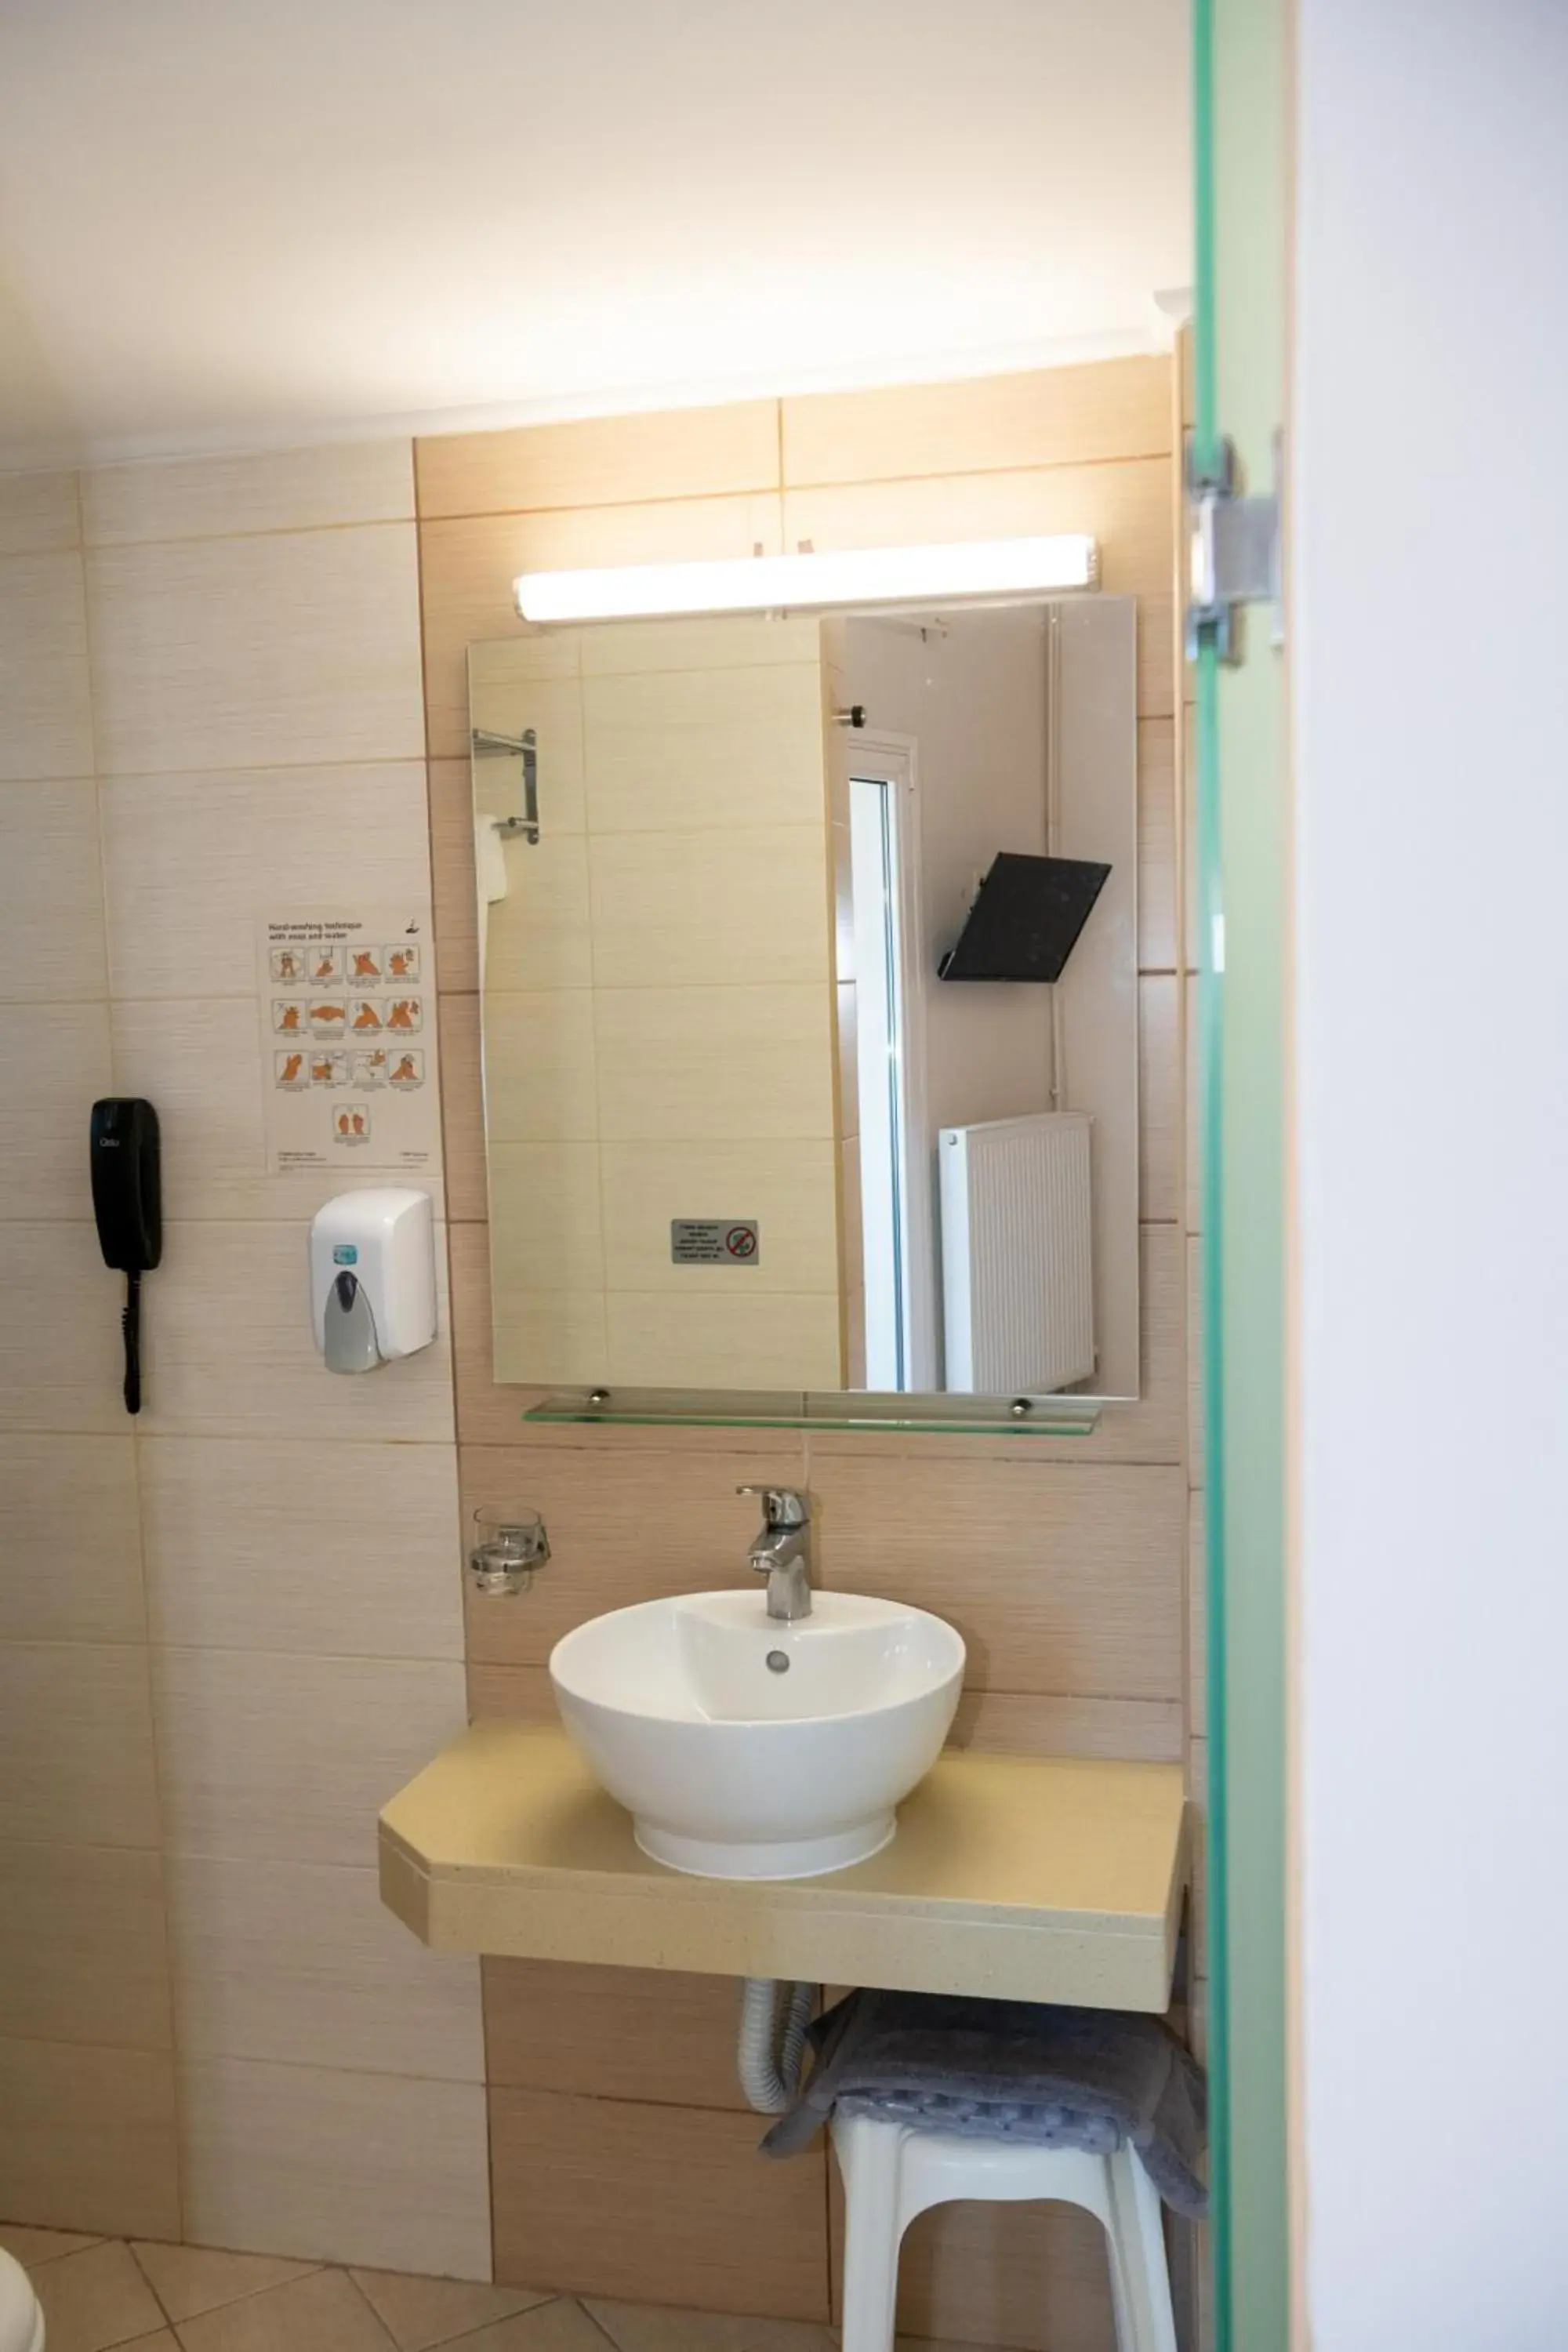 Bathroom in Kronos Hotel